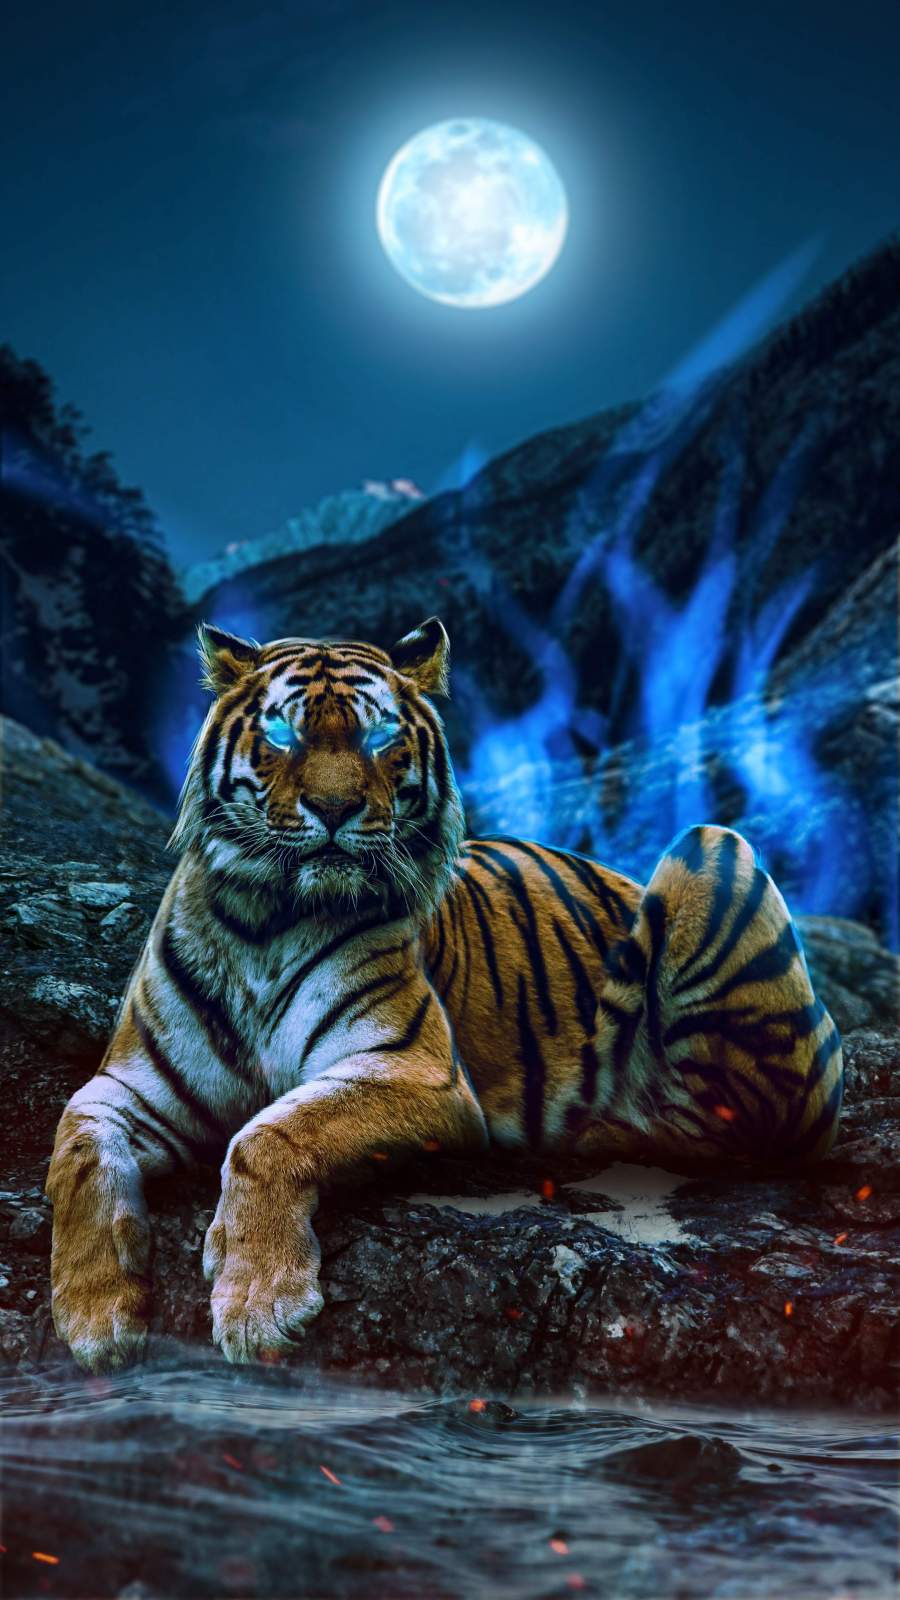 Blue Tiger Images  Free Download on Freepik